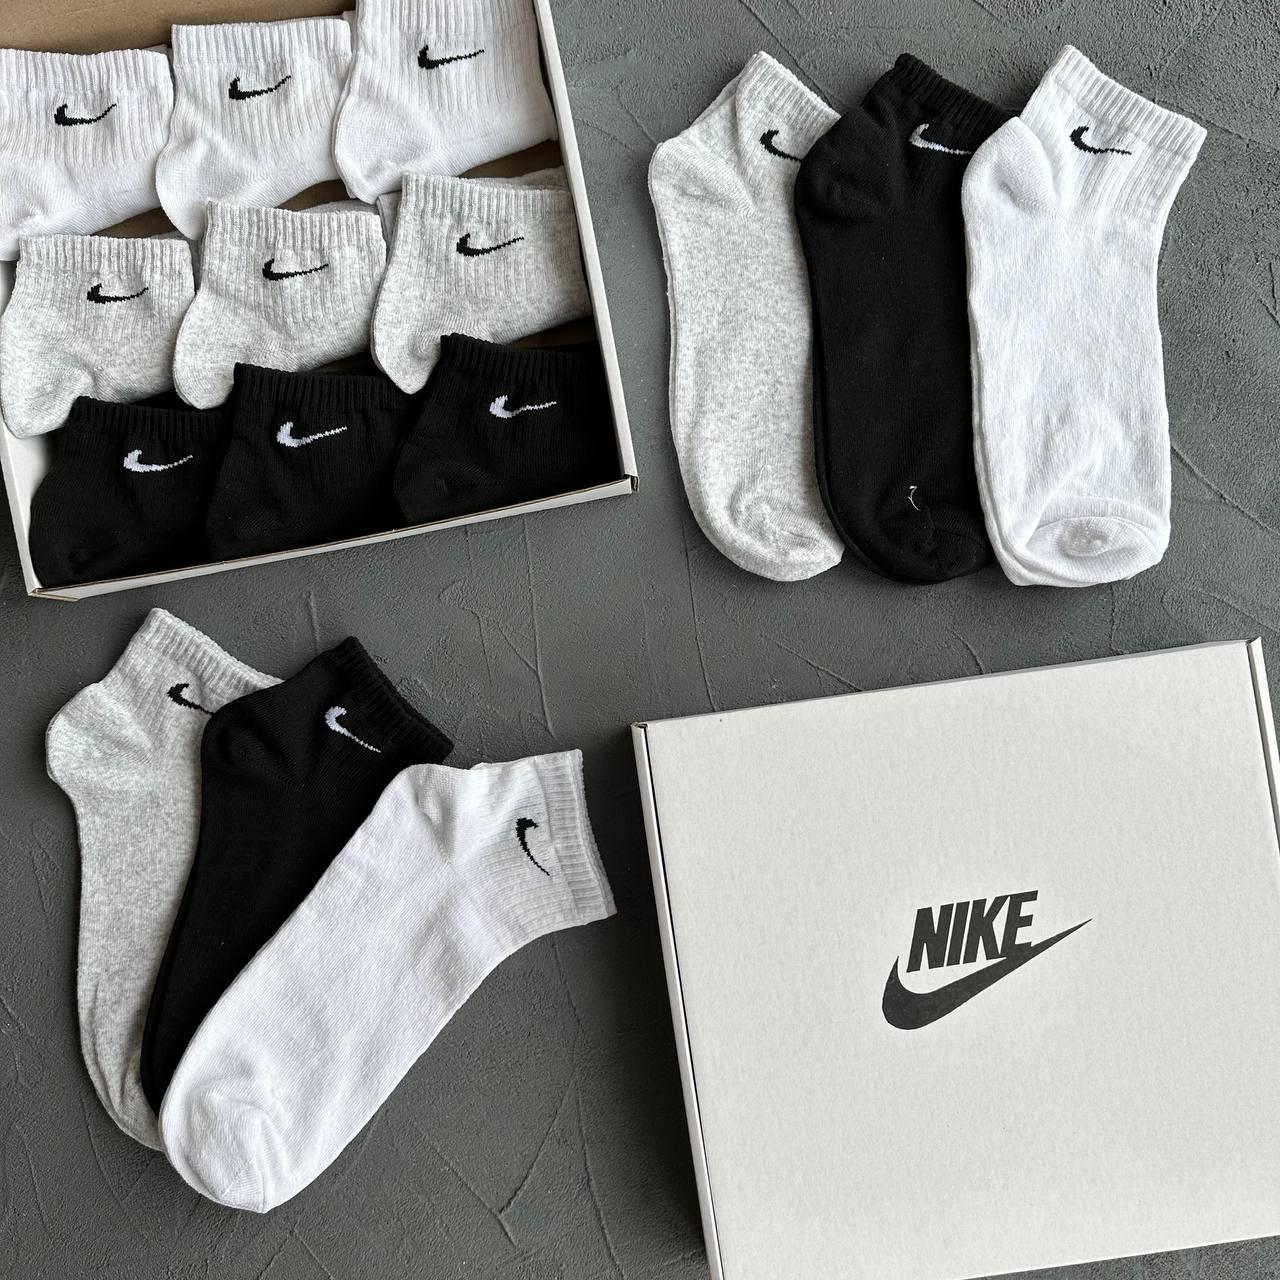 Чоловічі короткі шкарпетки Nike 18 пар білі сірі чорні Найк подарунковий набір шкарпеток